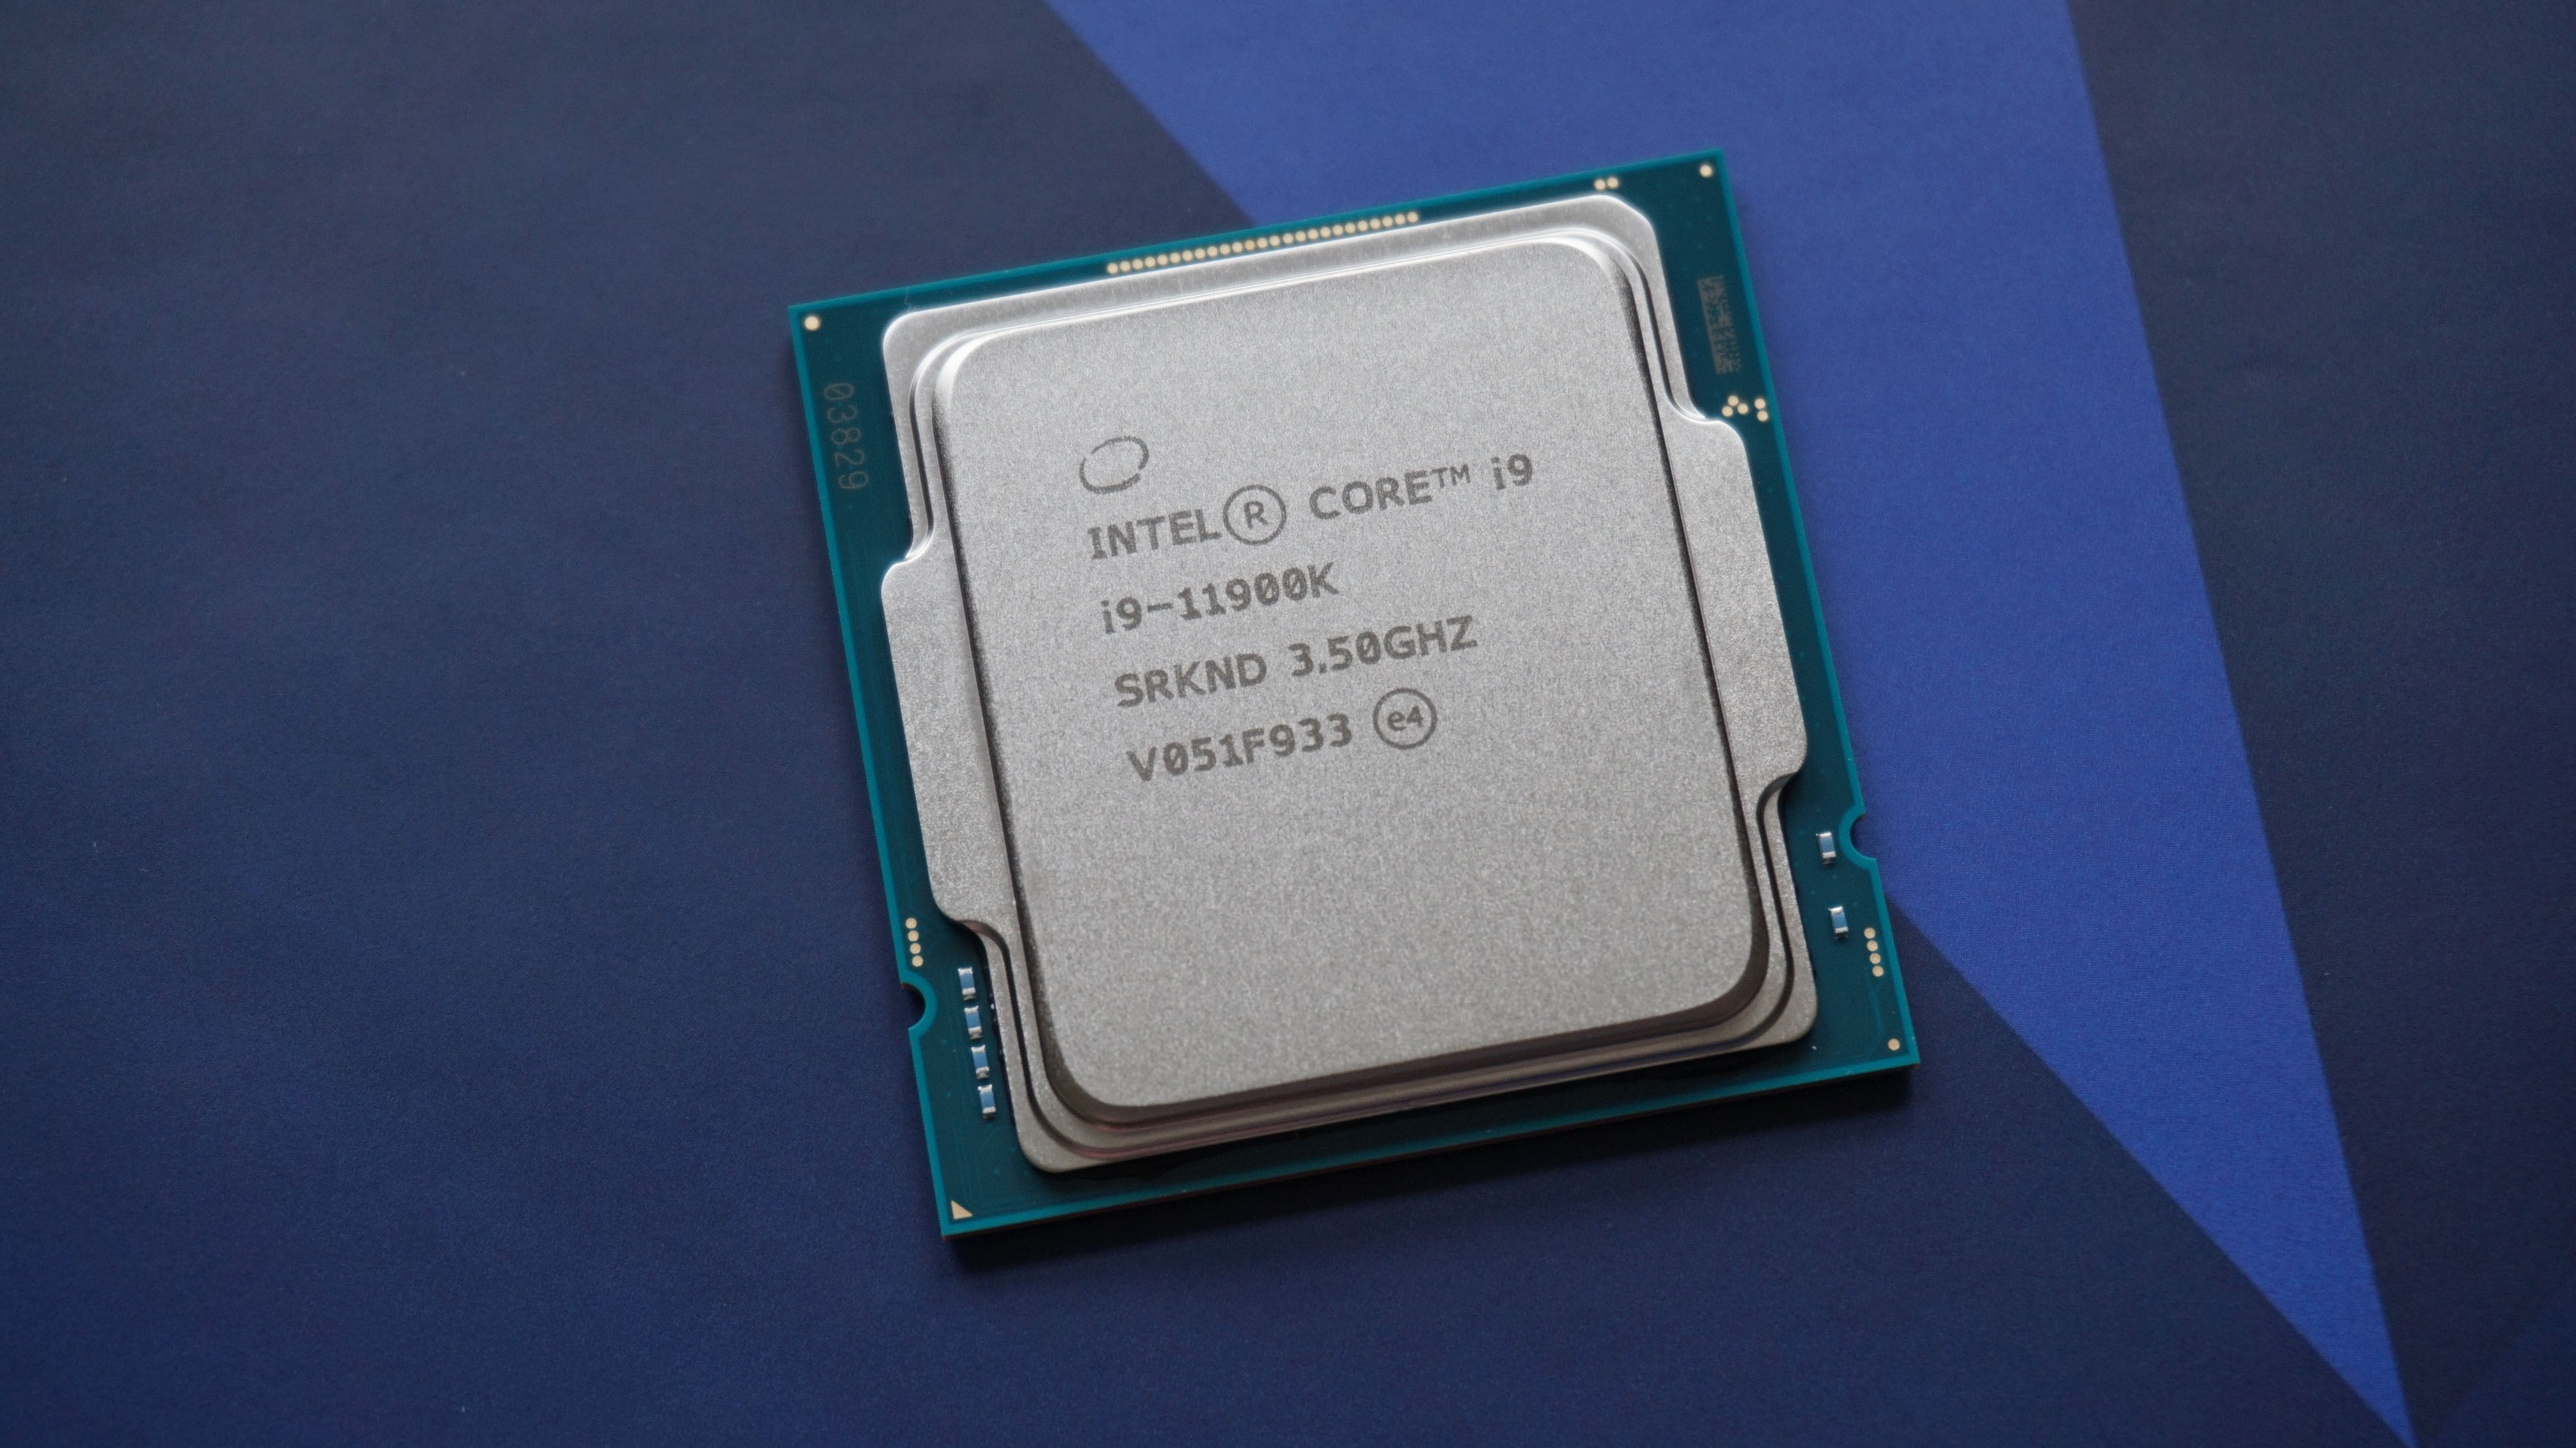 Intel's Core i9-11900K CPU